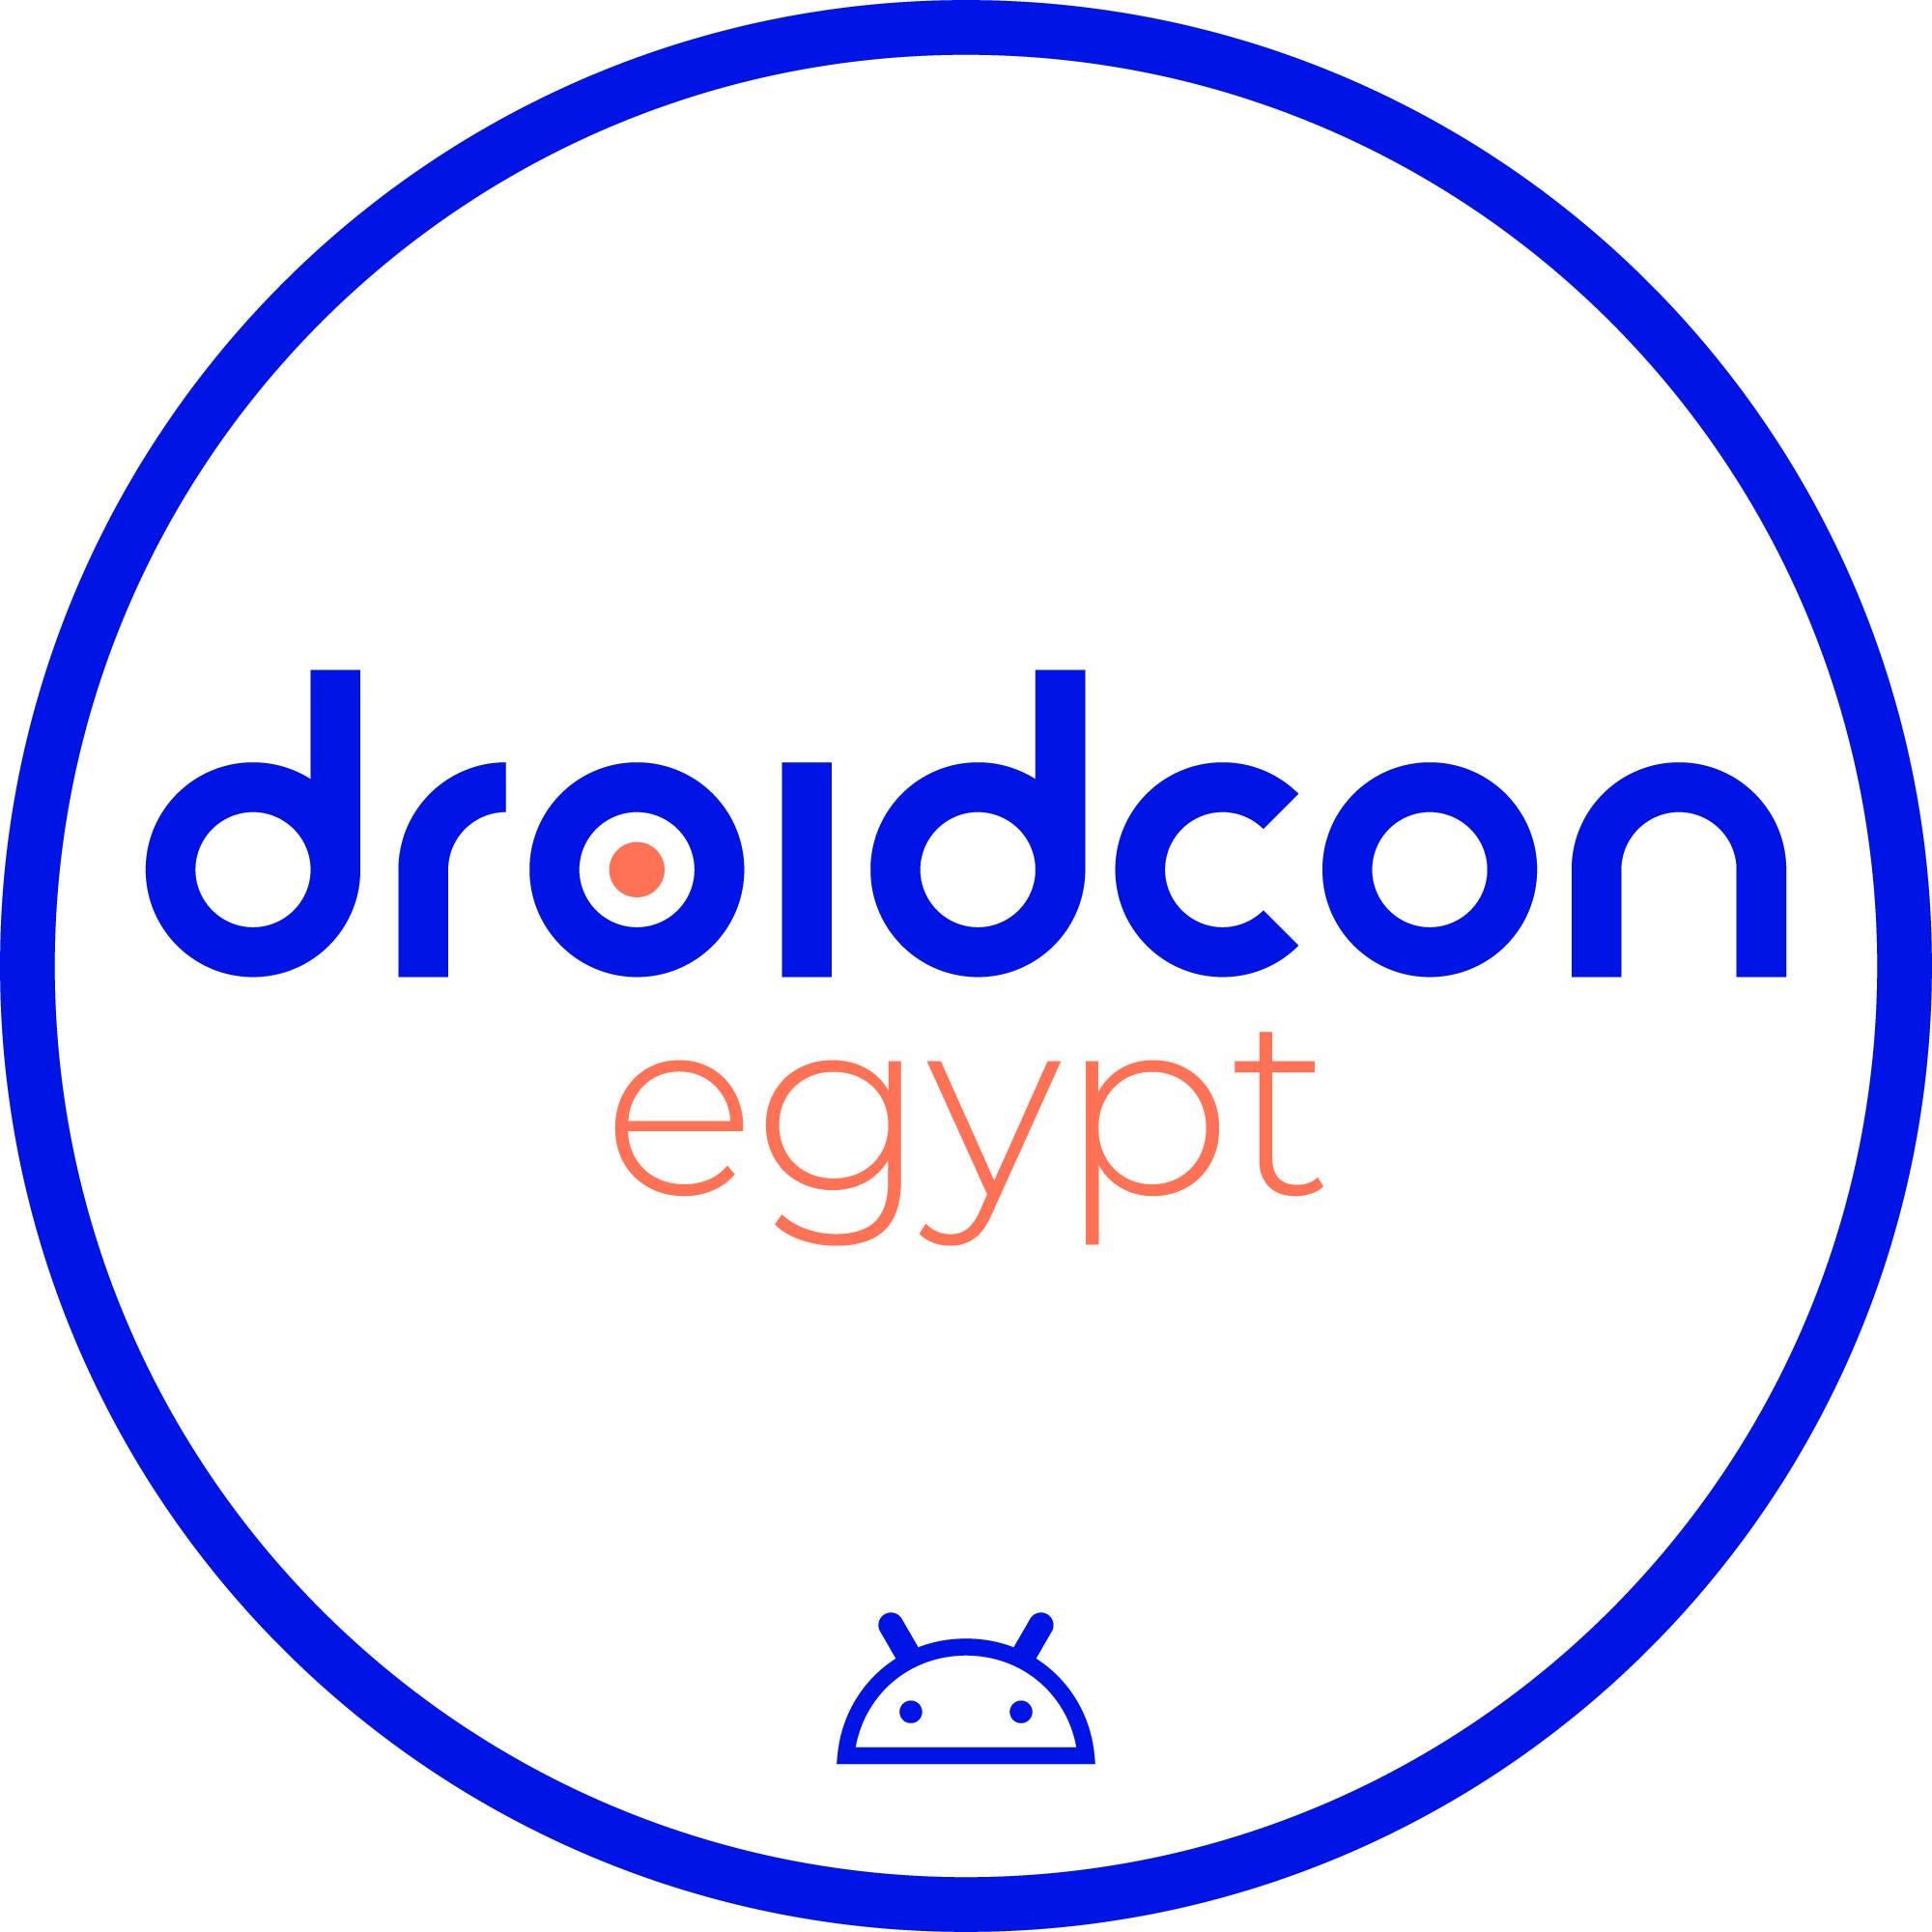 DroidCon logo